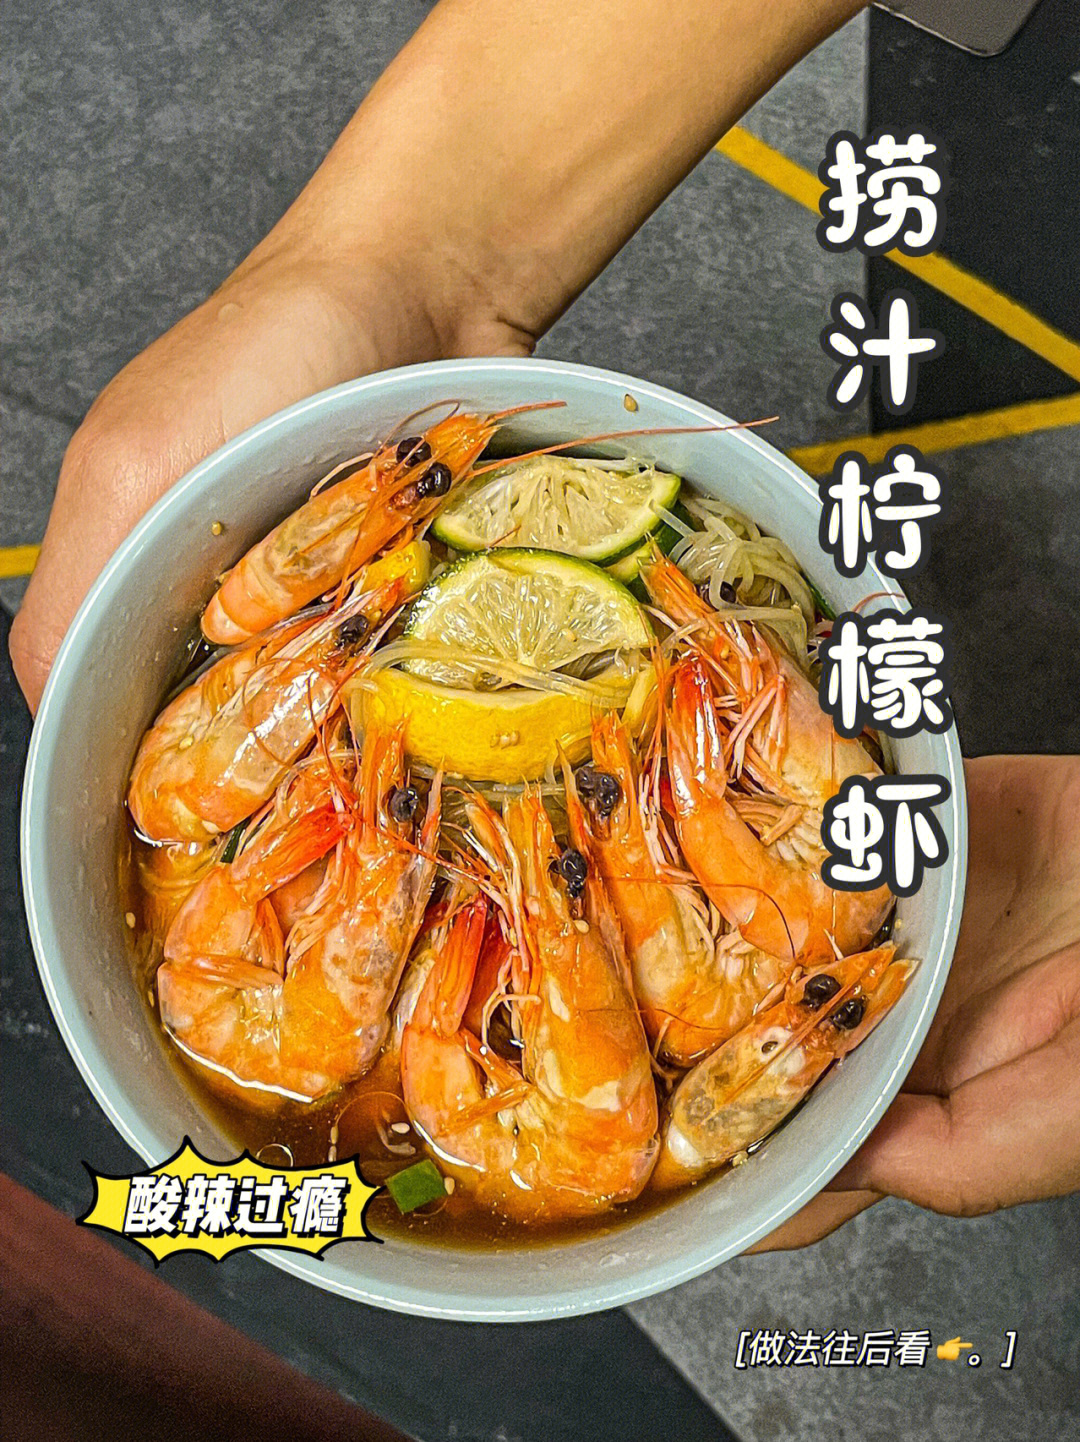 基围虾,葱姜蒜,小米椒,柠檬青柠,海鲜捞汁08做法:97基围虾处理